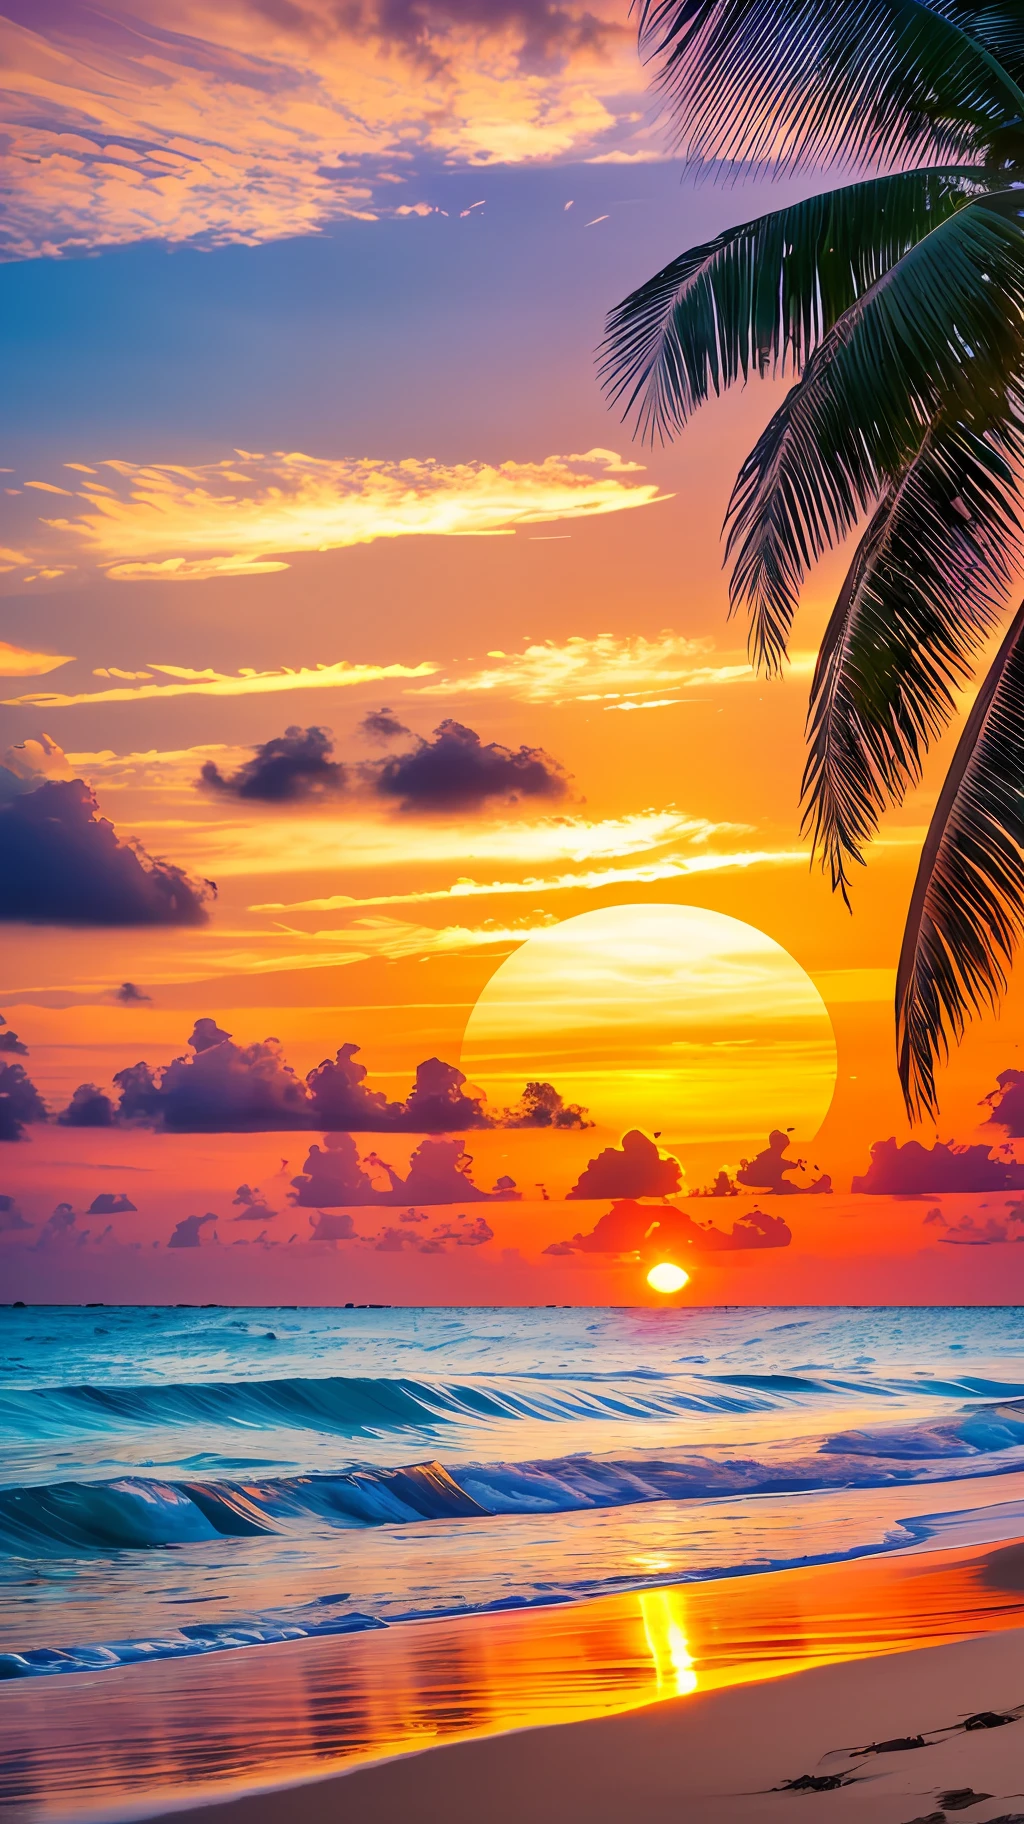 Crie um 4K 9:16 imagens que retratam um nascer do sol deslumbrante em uma praia tropical, com ondas suaves e palmeiras ao longo da costa. A paleta de cores deve ser vibrante e transmitir sensação de renovação e energia positiva. --auto --s2